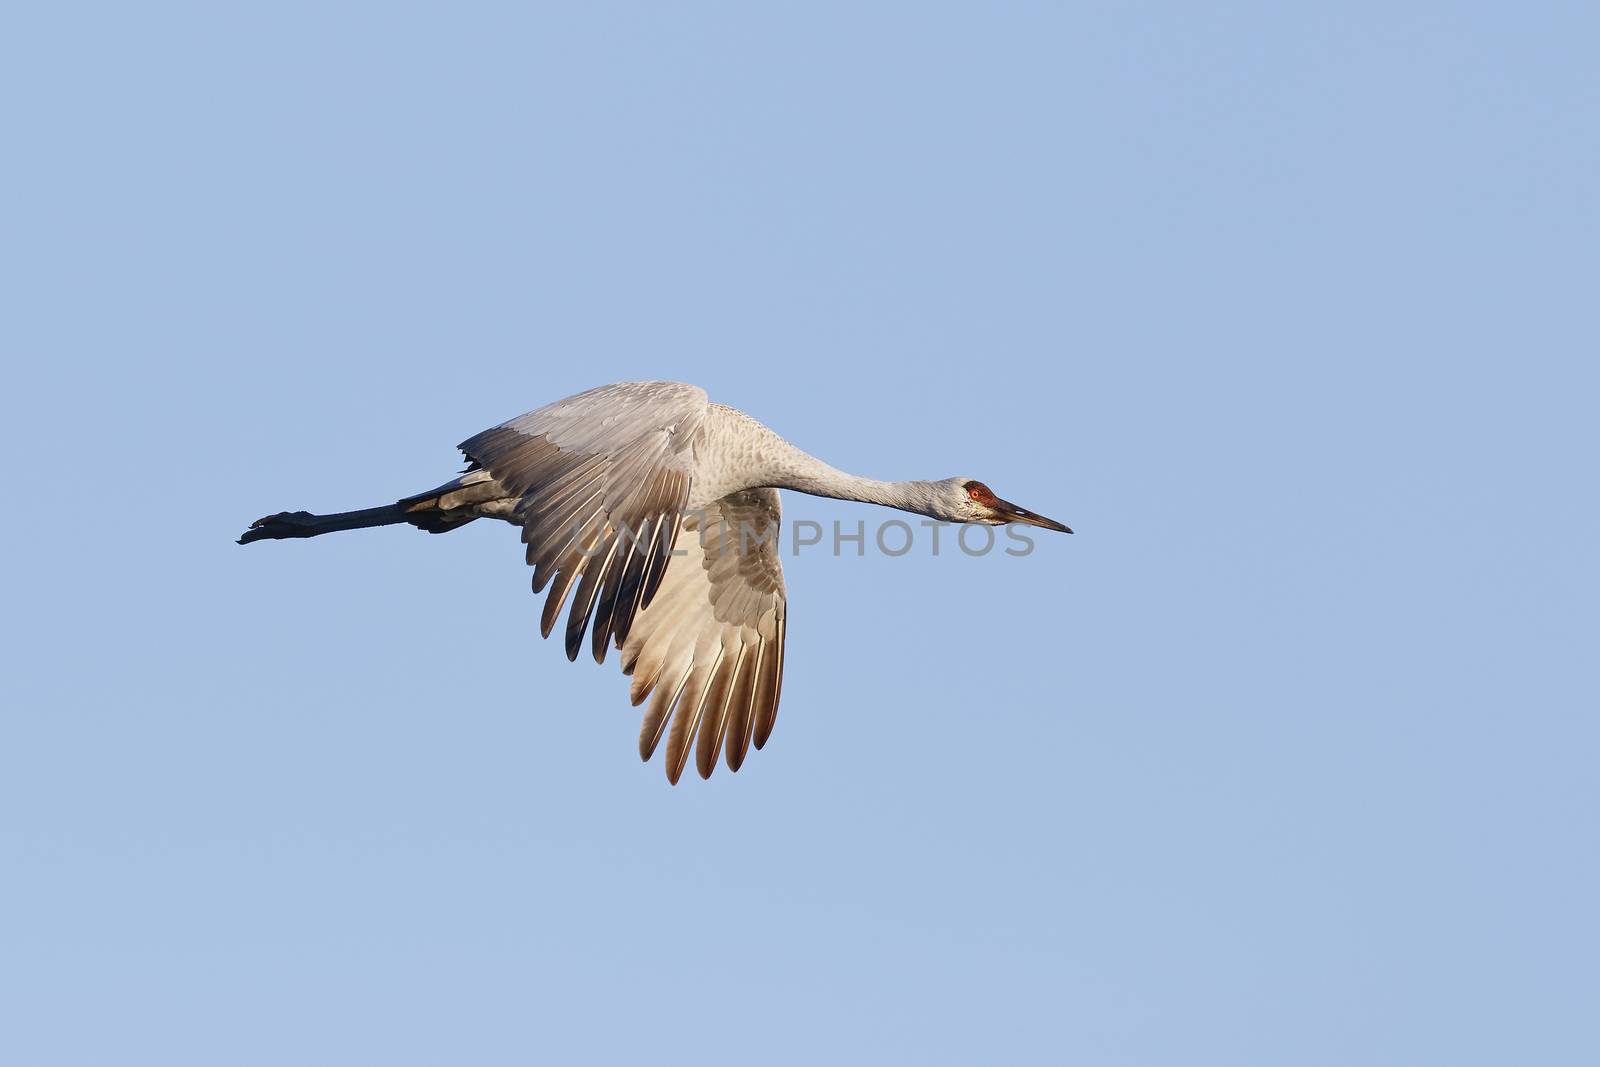 Sandhill Crane in flight - Gainesville, Florida by gonepaddling